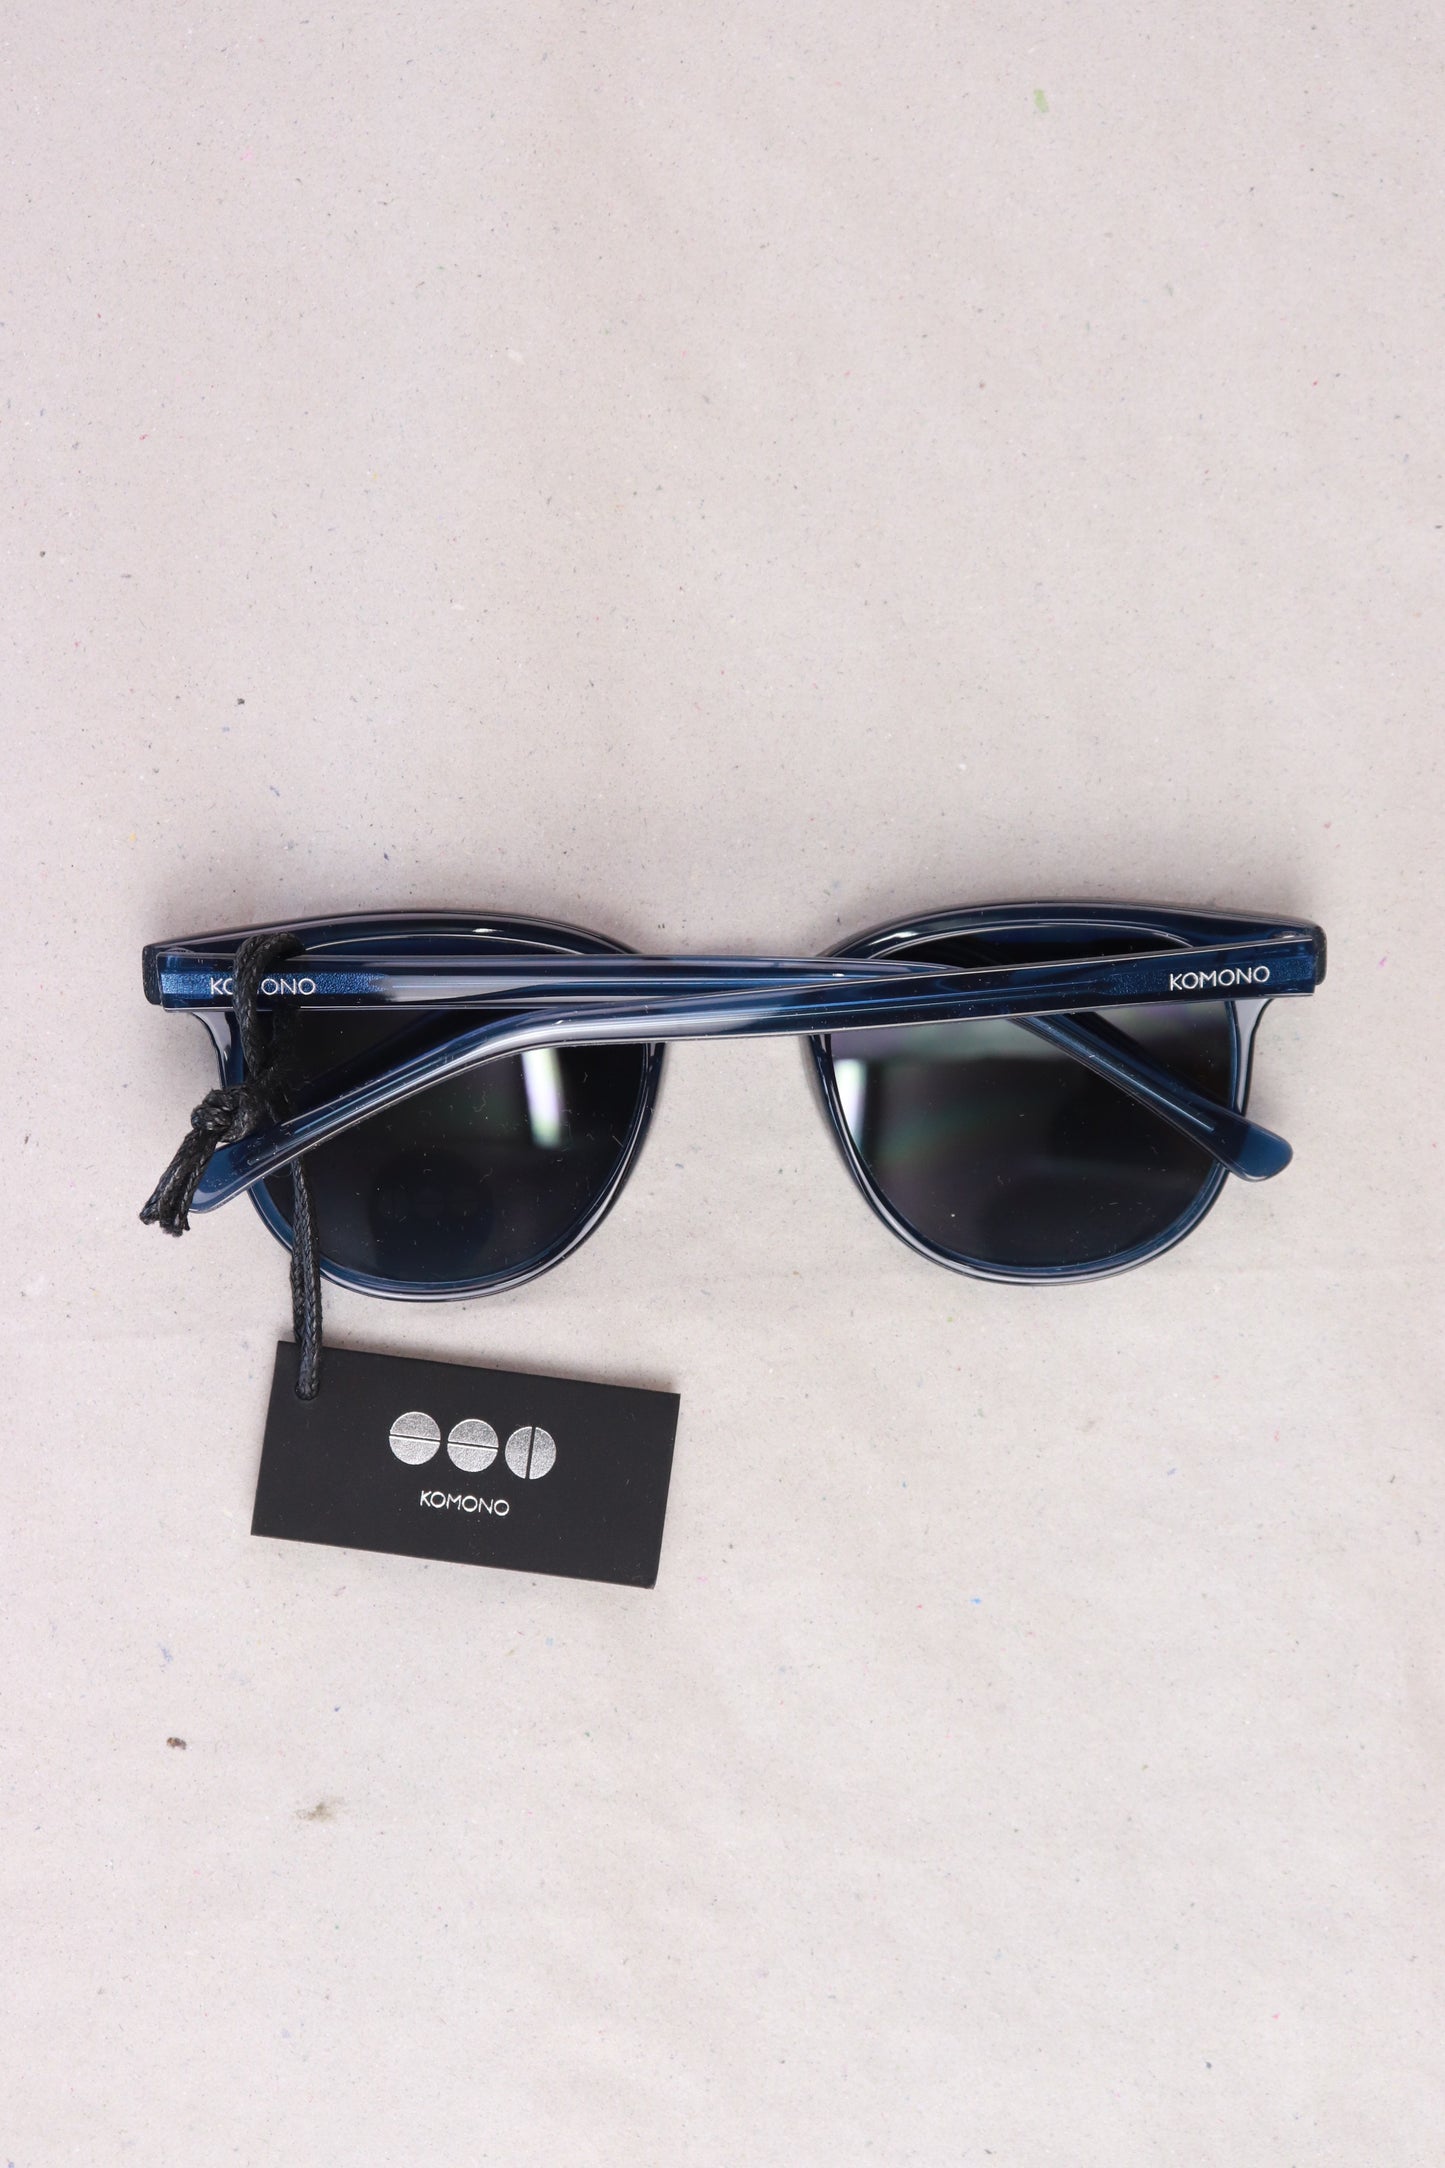 Komono Kinder Sonnenbrille Modell The Francis UV400 blau Größe Onesize neu mit Etikett